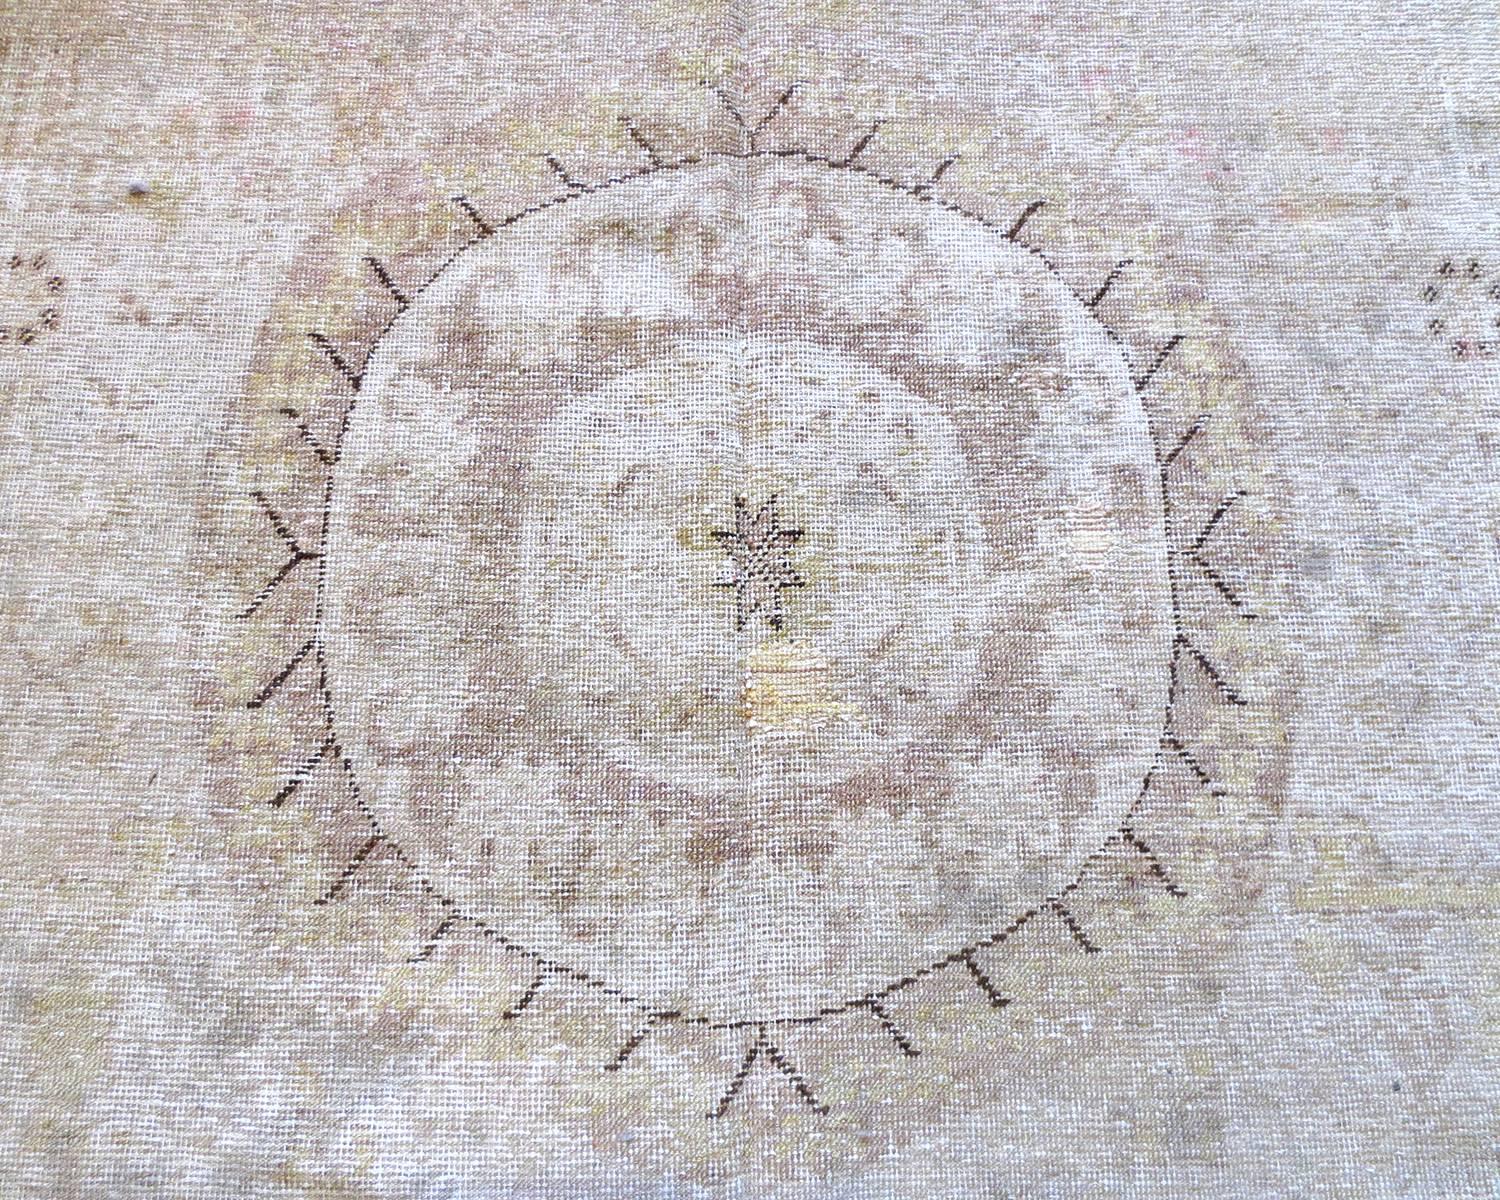 Dies ist ein antiker Khotan-Teppich aus Ostturkestan, ca. 1870. Es zeichnet sich durch drei große runde Medaillons aus, von denen jedes in einem anderen Design stilisiert ist, das auf einem schönen lavendelfarbenen Feld steht und von mehreren